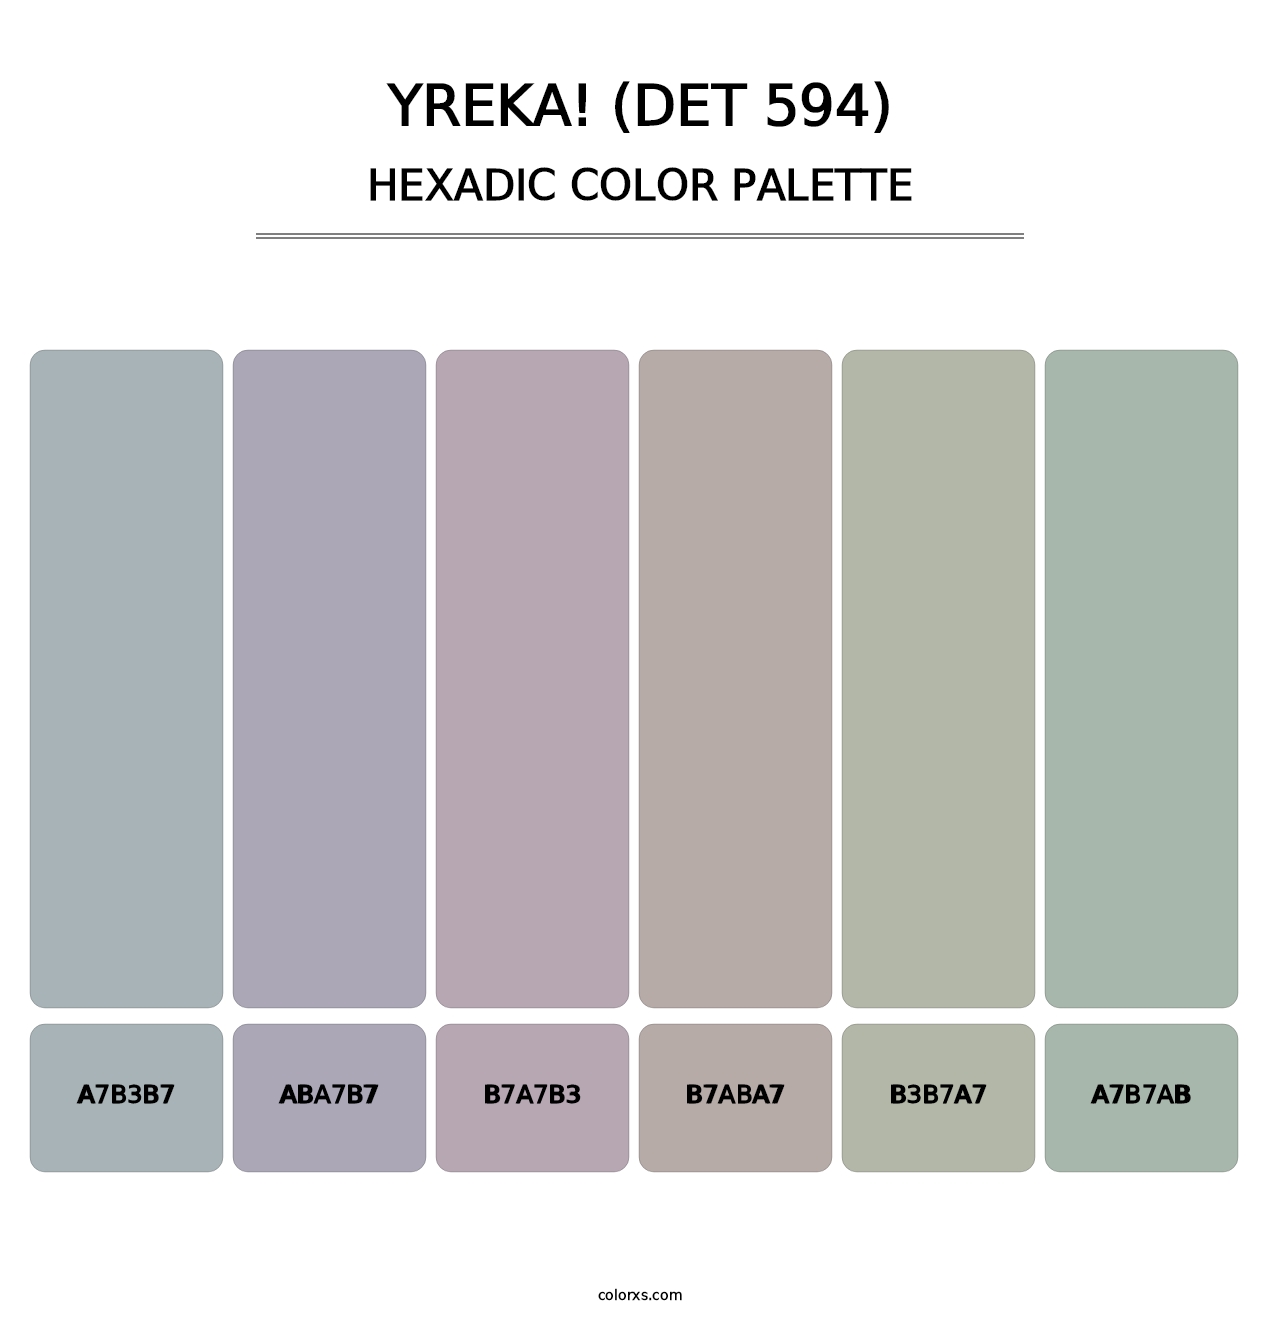 Yreka! (DET 594) - Hexadic Color Palette